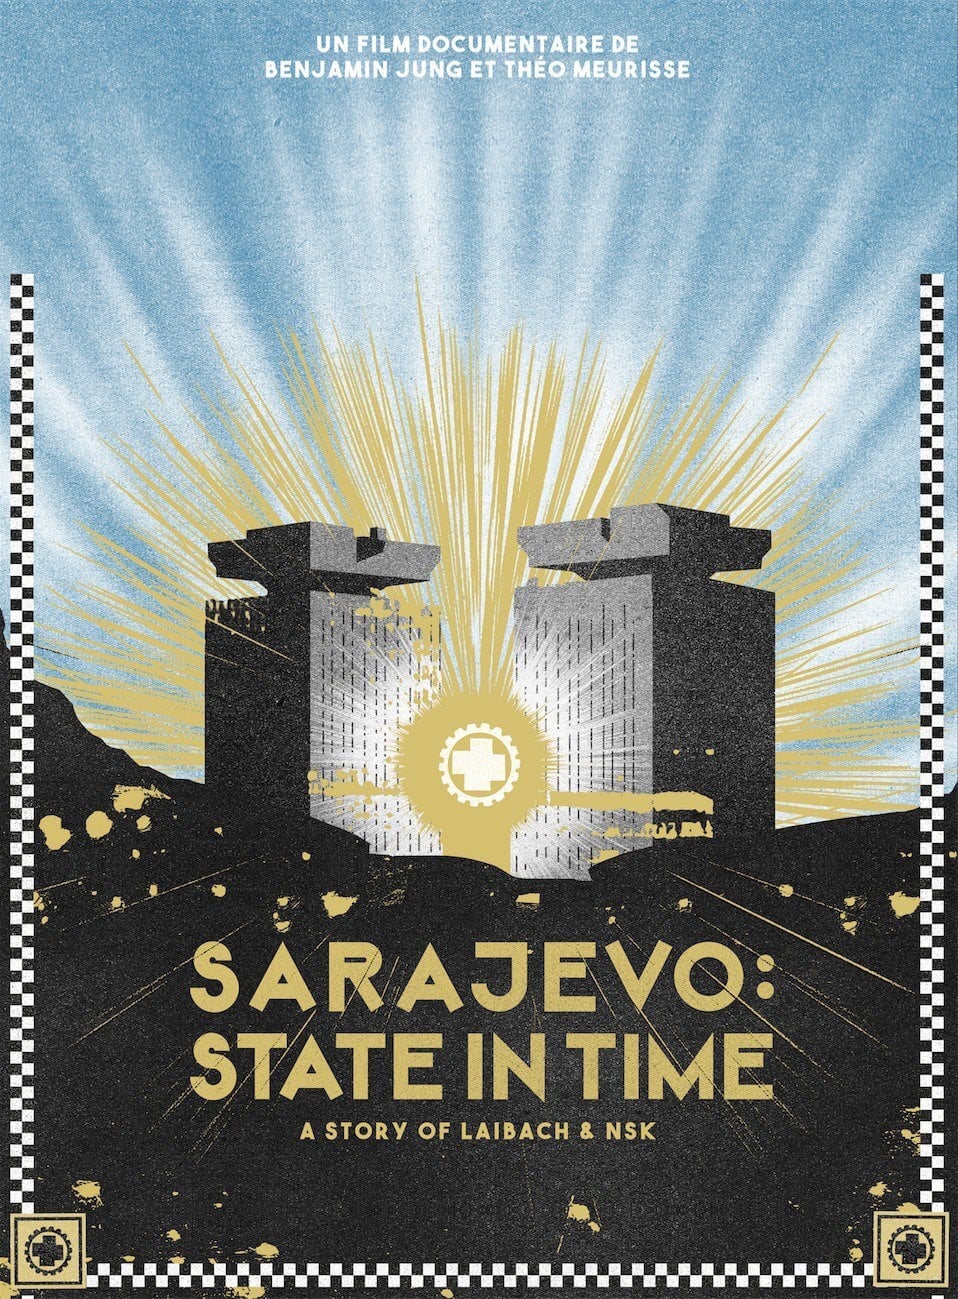 Caratula de Sarajevo: State In Time (Sarajevo: State in time) 